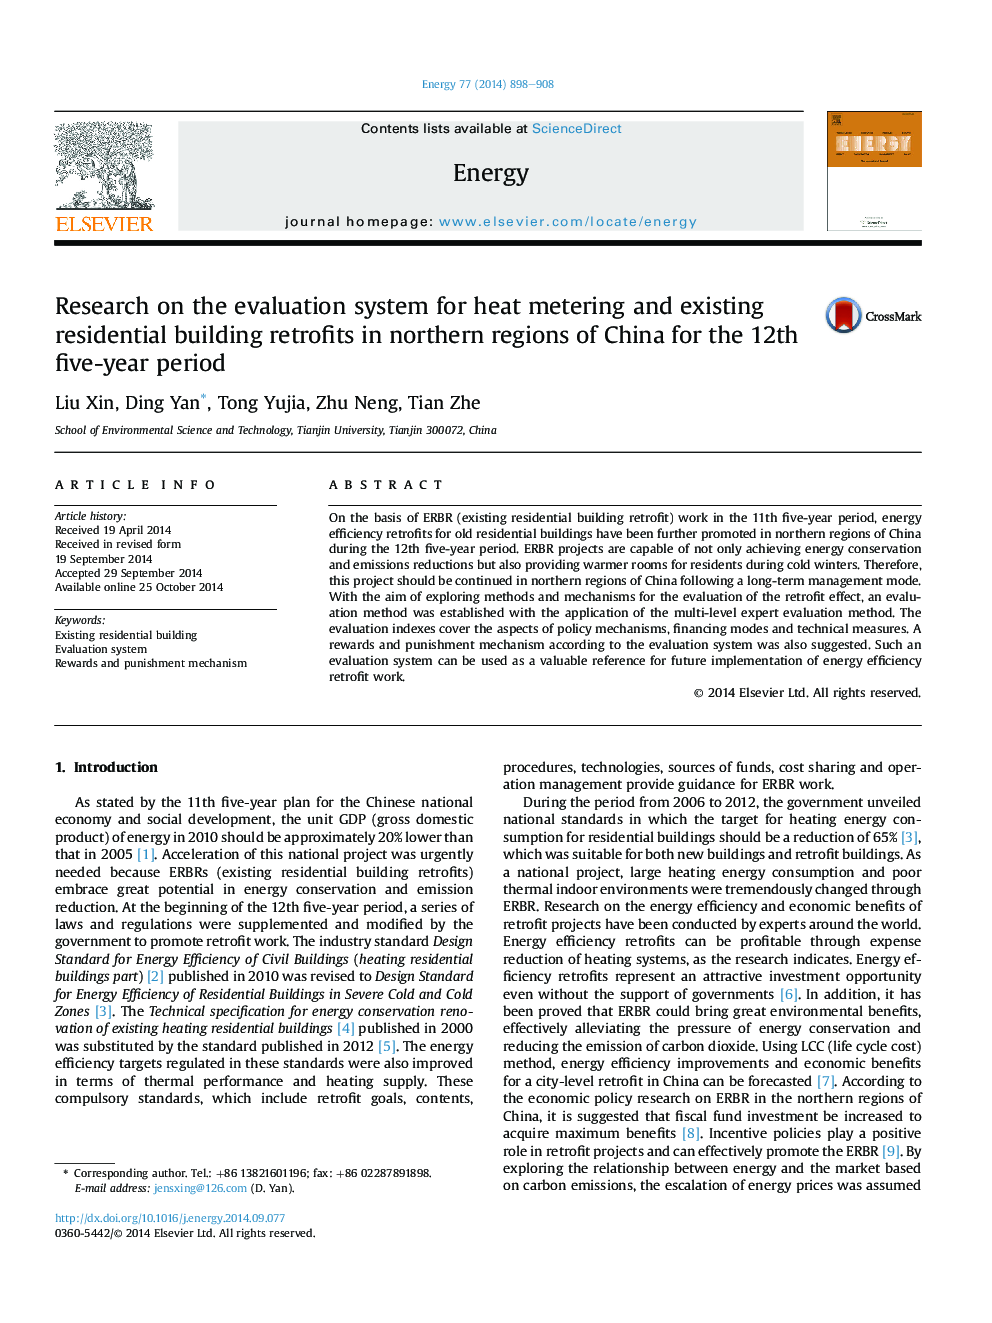 تحقیق در سیستم ارزیابی گرماسنج و مجتمع های مسکونی موجود در مناطق شمالی چین برای دوره 12 ساله پنج ساله 